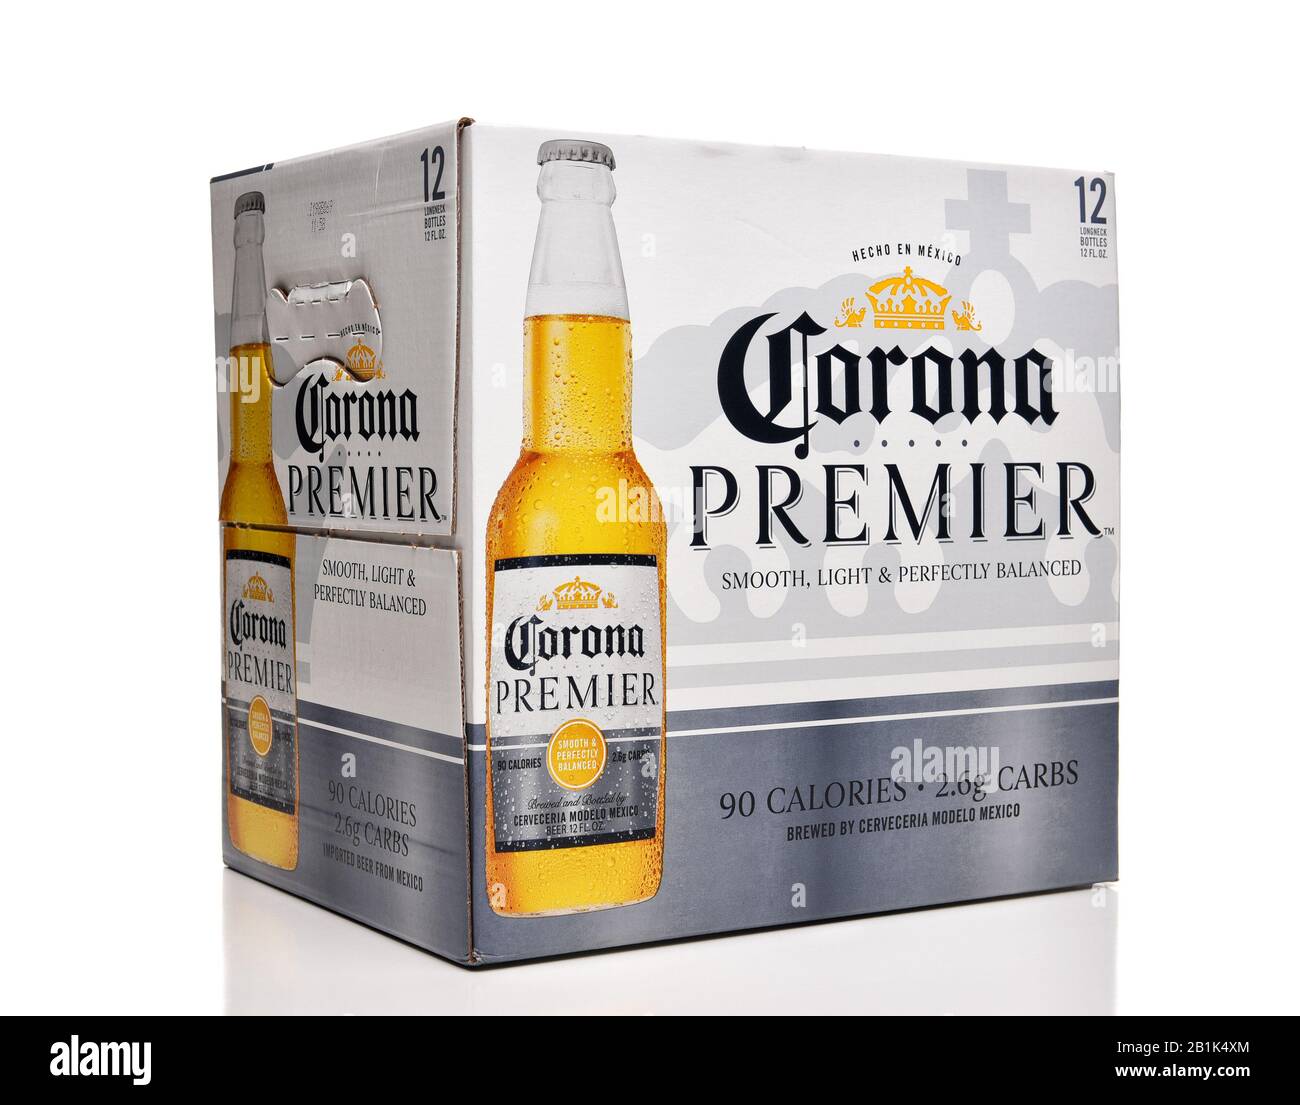 Irvine, CALFORNIA - 17 FEBBRAIO 2019: Bottiglie Corona Premier 12 Pack,  Corona Premier è una birra leggera premium con 2,6 grammi di carbs e 90  calorie Foto stock - Alamy